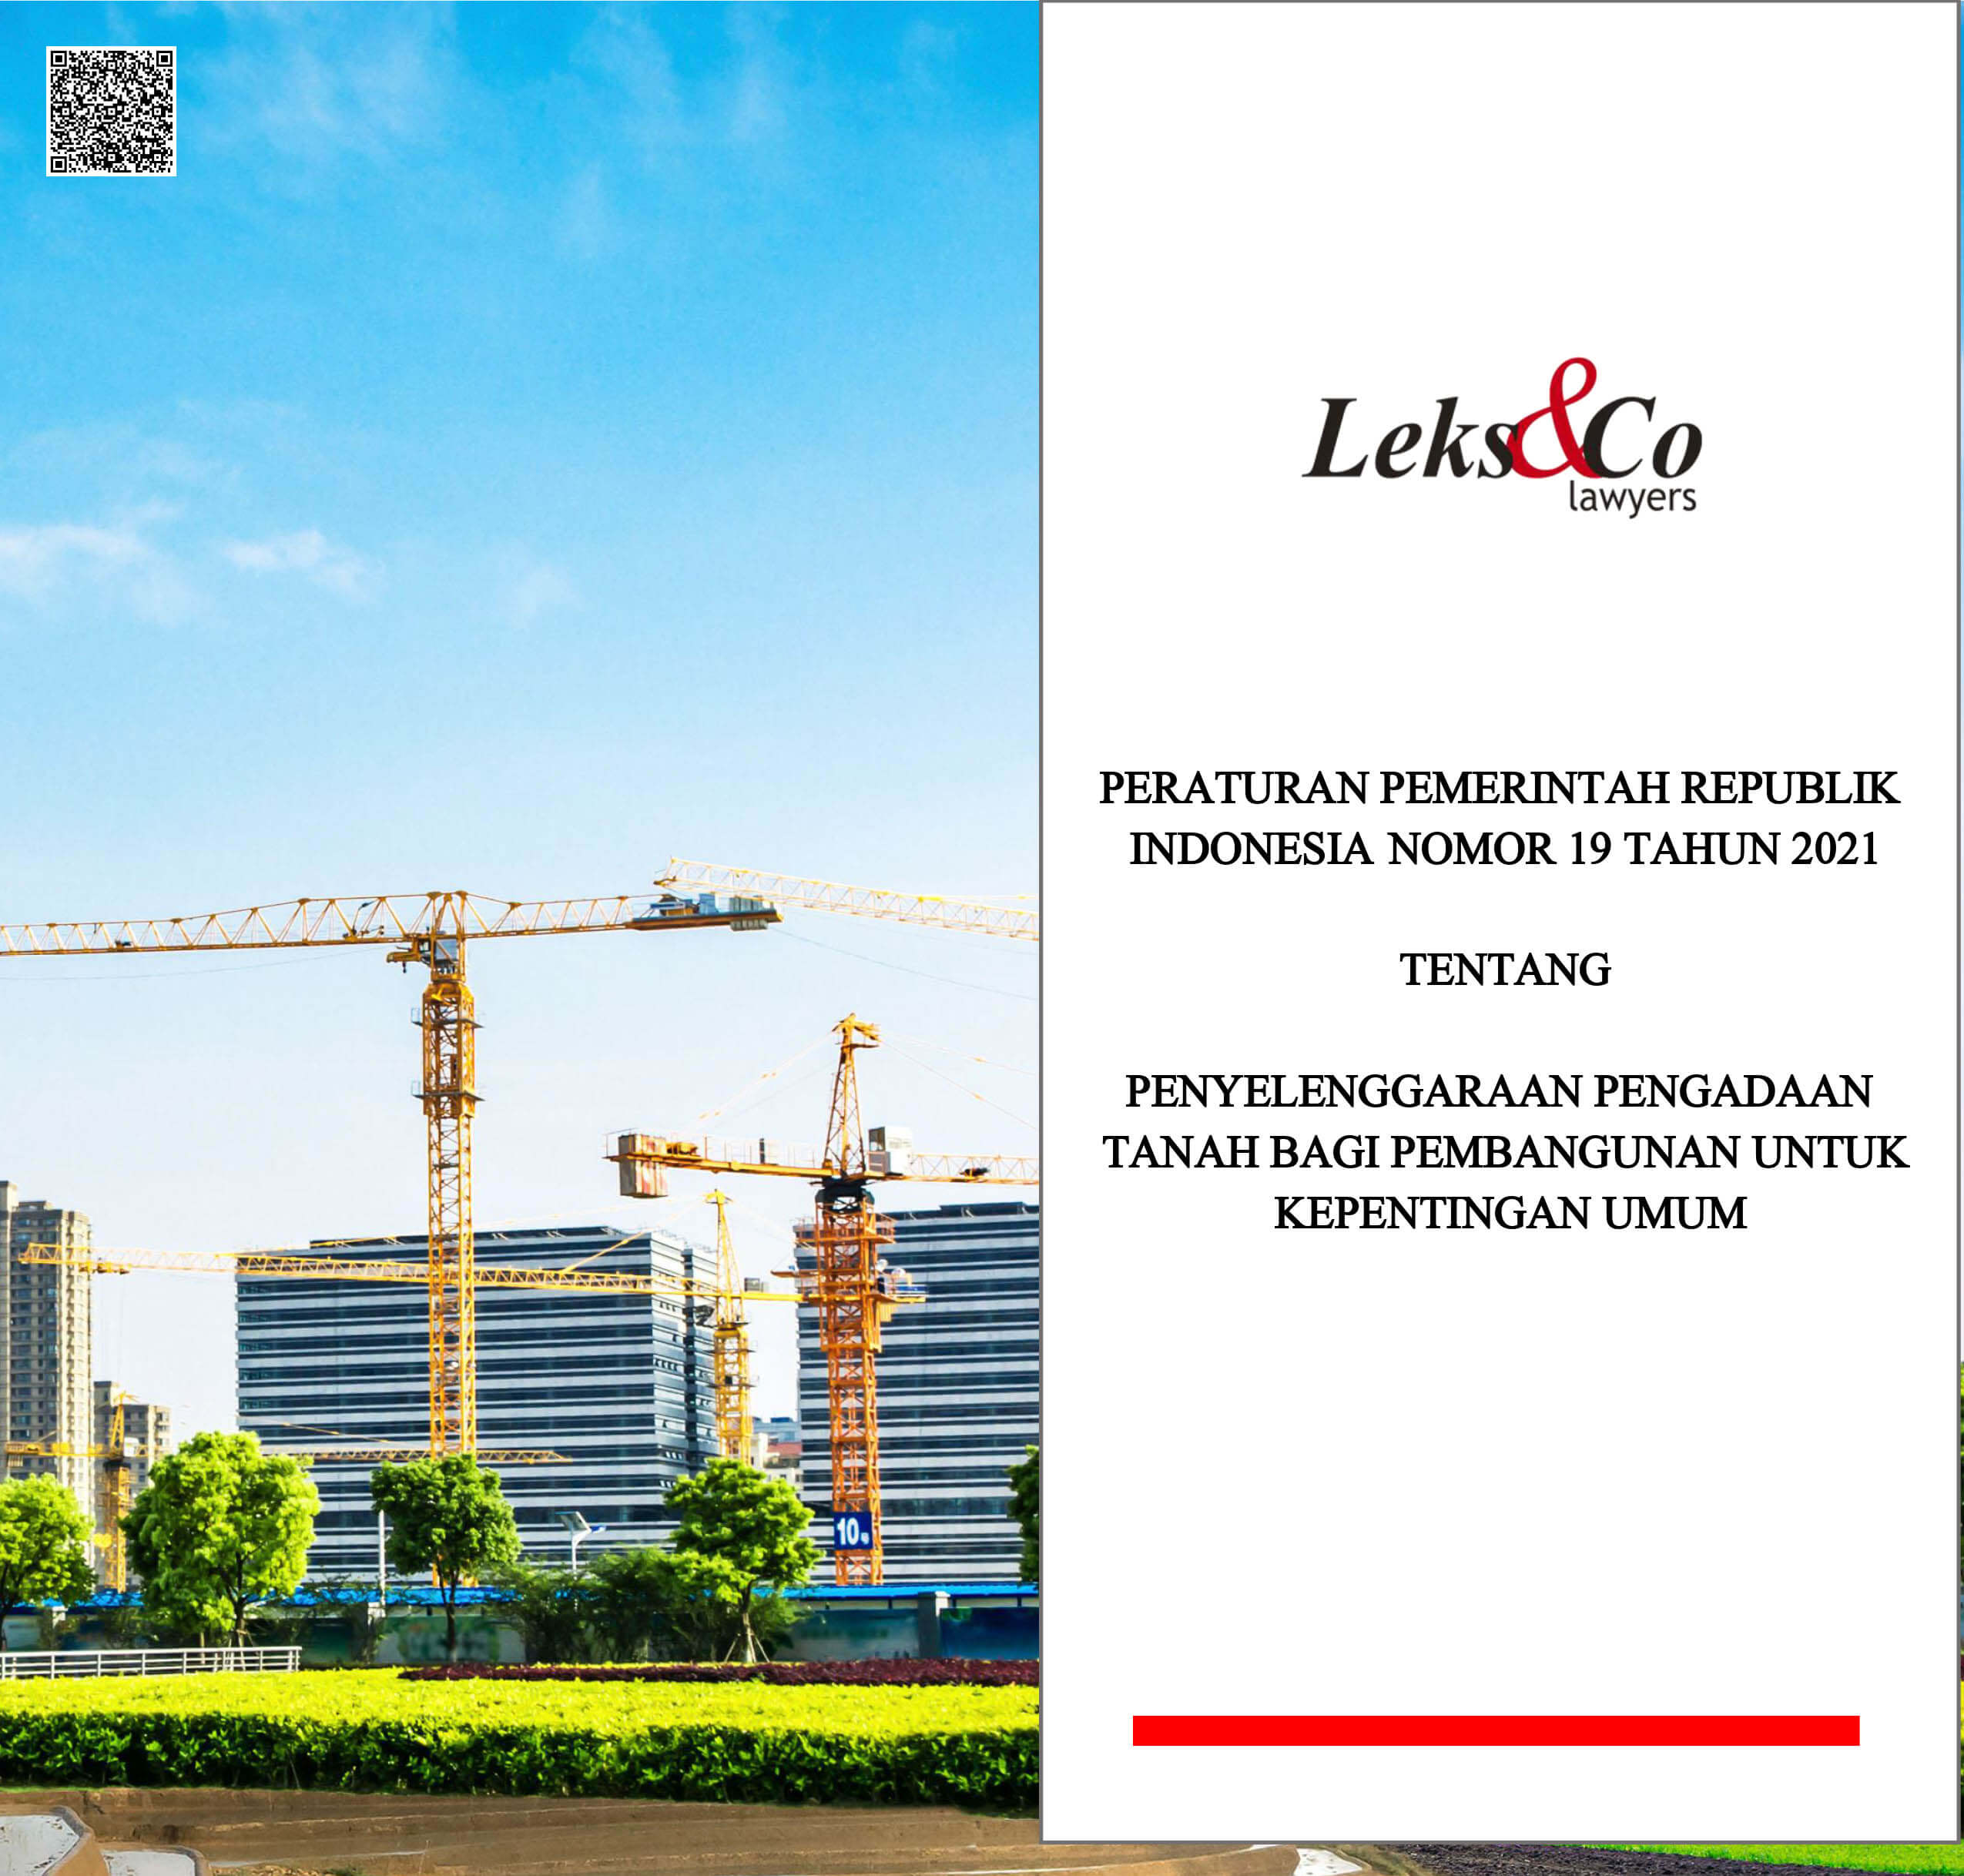 Peraturan Pemerintah Republik Indonesia Nomor 19 Tahun 2021 Tentang Penyelenggaraan Pengadaan Tanah Bagi Pembangunan Untuk Kepentingan Umum